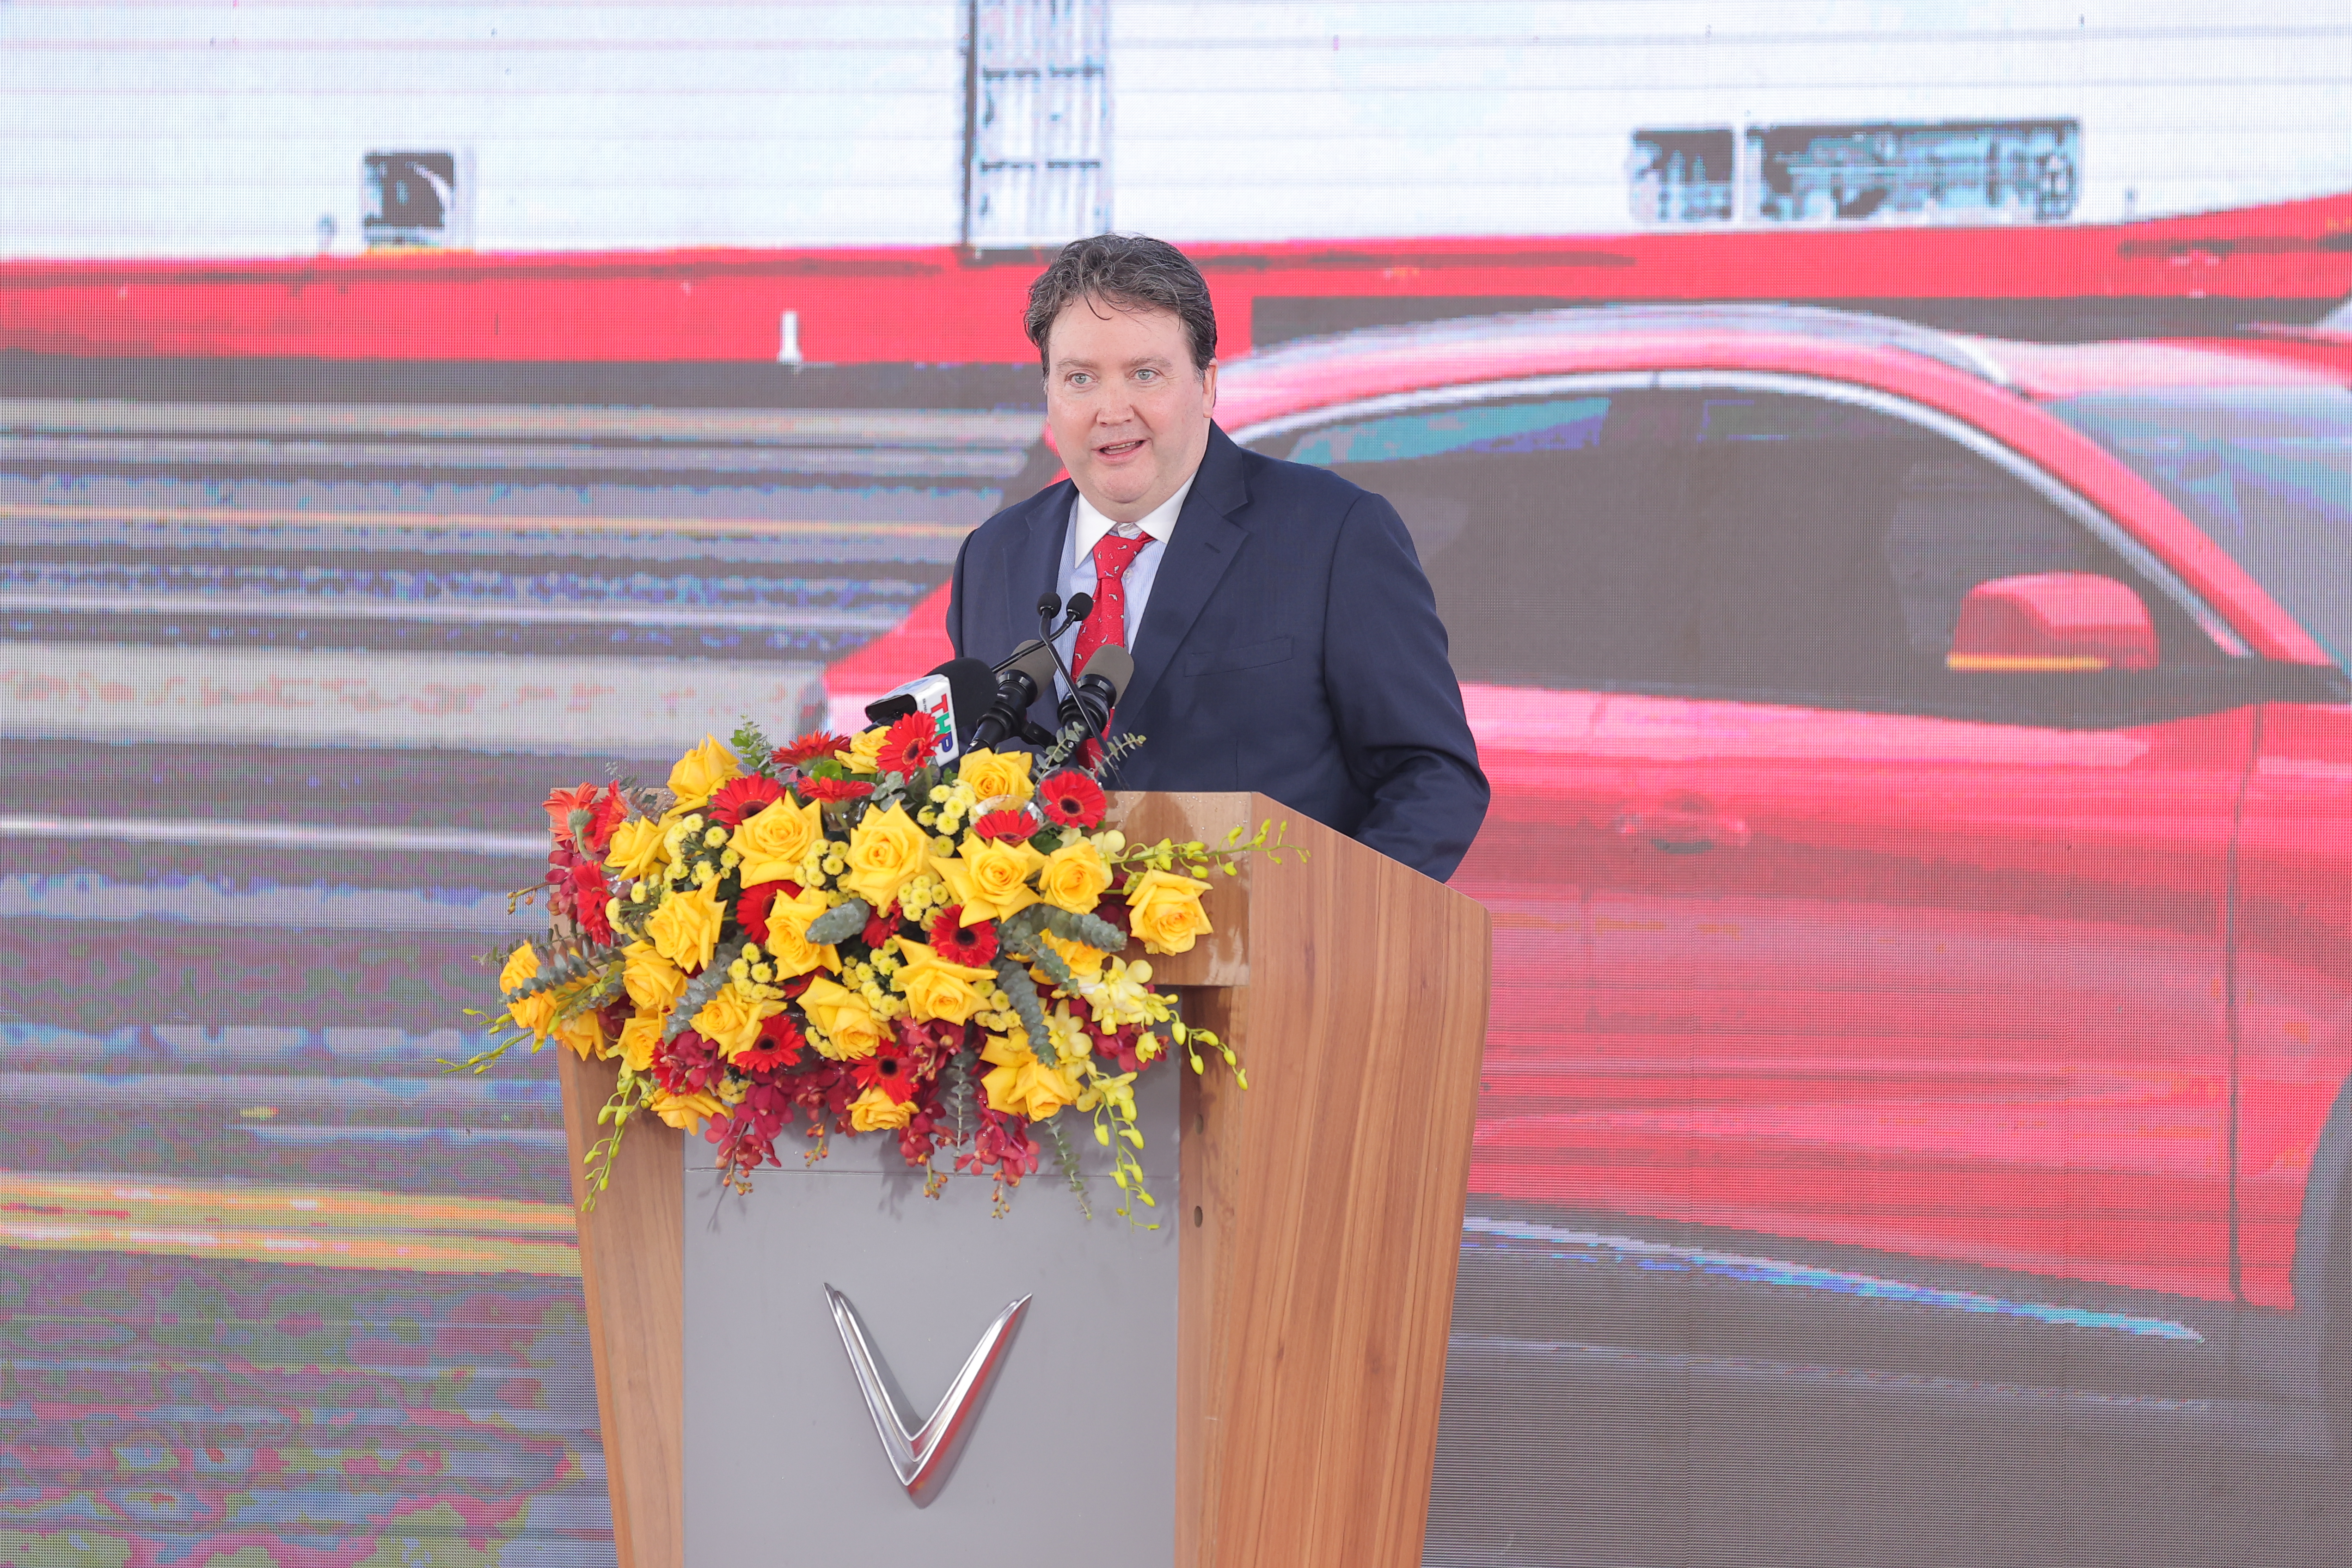 Ông Marc E. Knapper, Đại sứ Hoa Kỳ tại Việt Nam phát biểu tại buổi lễ